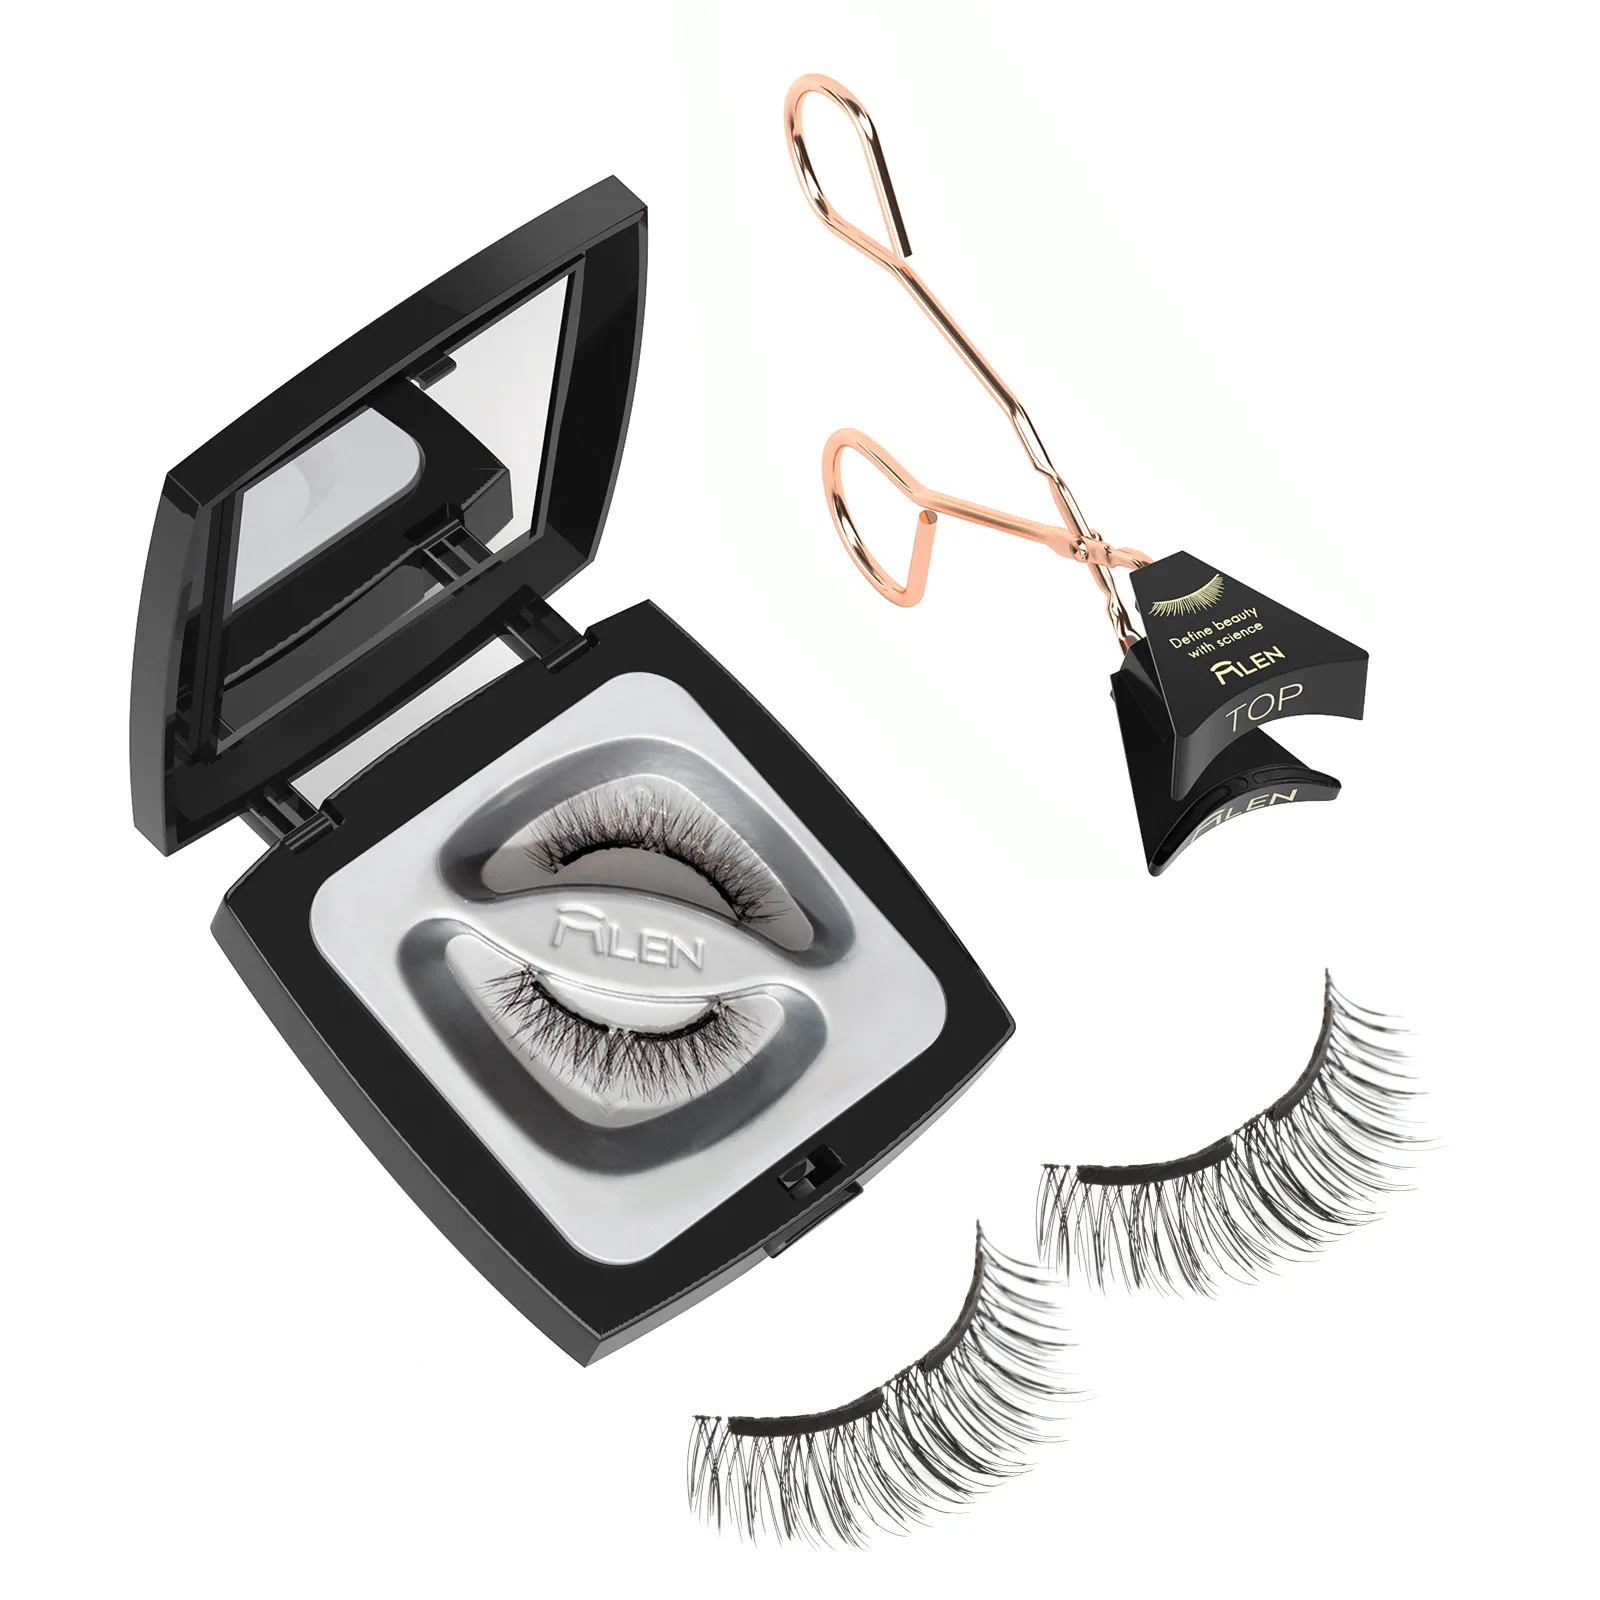 Mlen provide label bendable eyelashes Soft Magnetic Eyelashes Extension NO Eyeliner or Glue Needed Natural Look Eyelashes Set